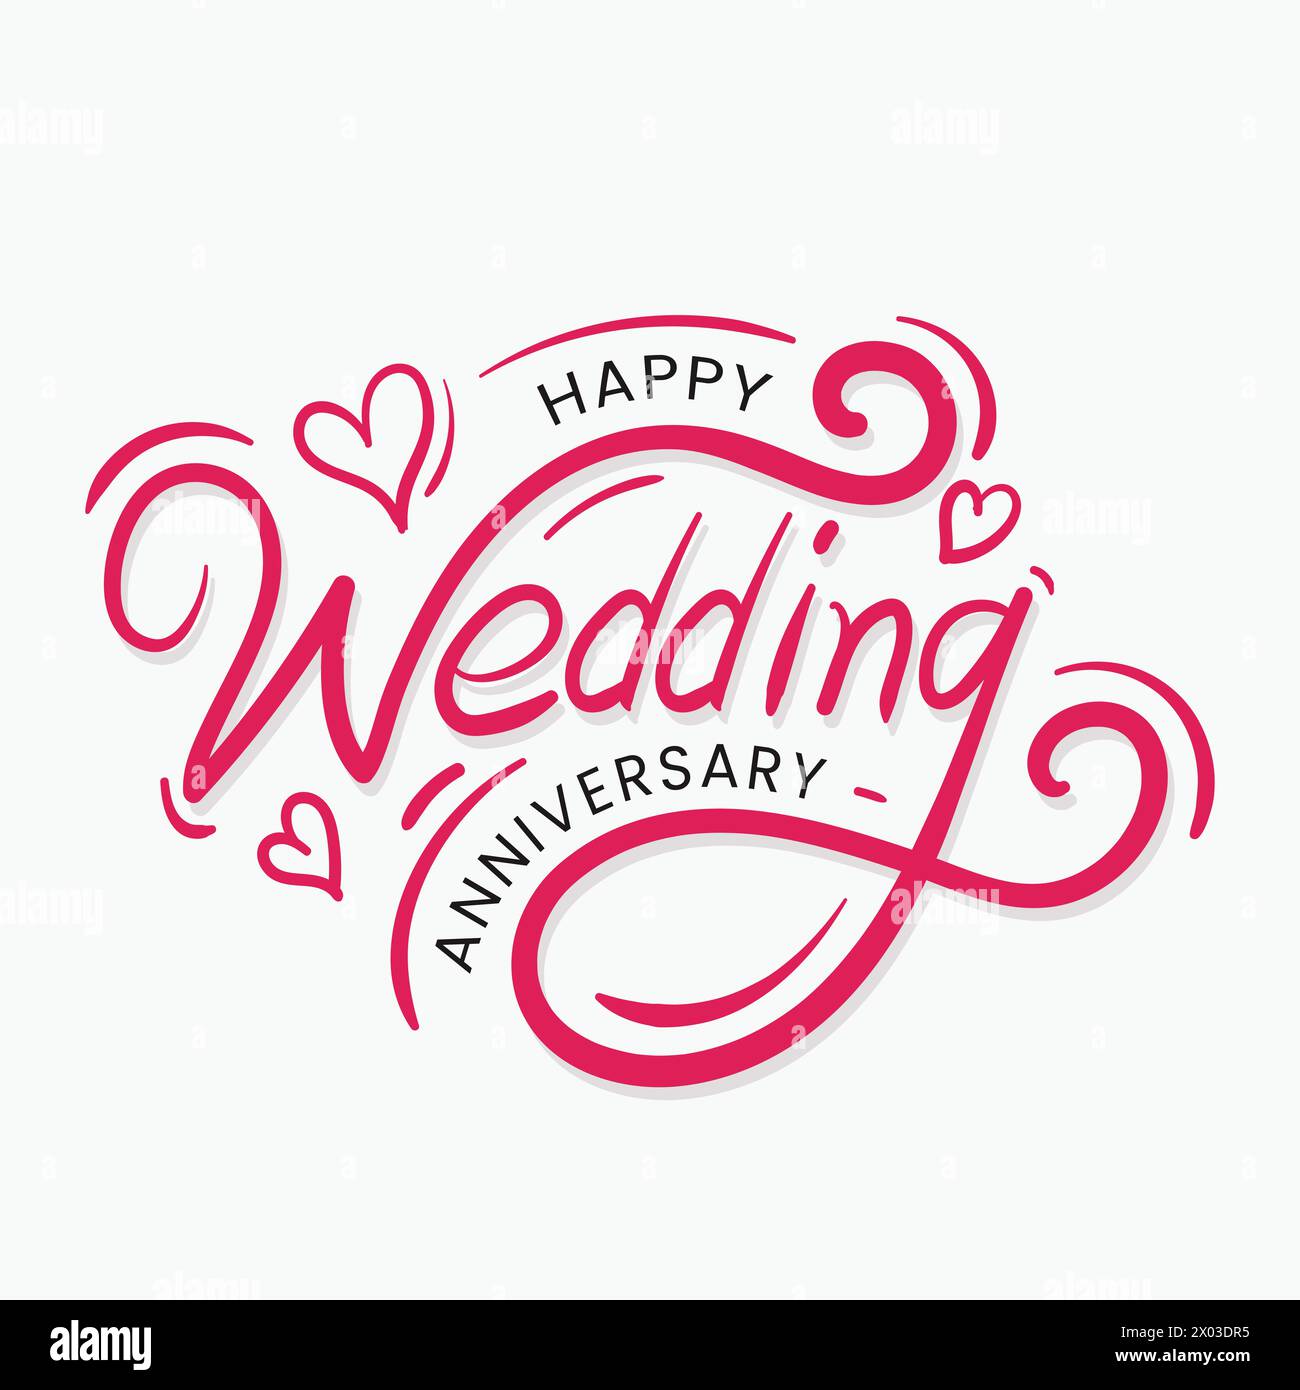 Happy Wedding Jubiläum Buchstaben Grußkarte Vektor Illustration für das Feiern Hochzeit Jahrestag Zeremonie Vorlage Design. Jubiläum Stock Vektor